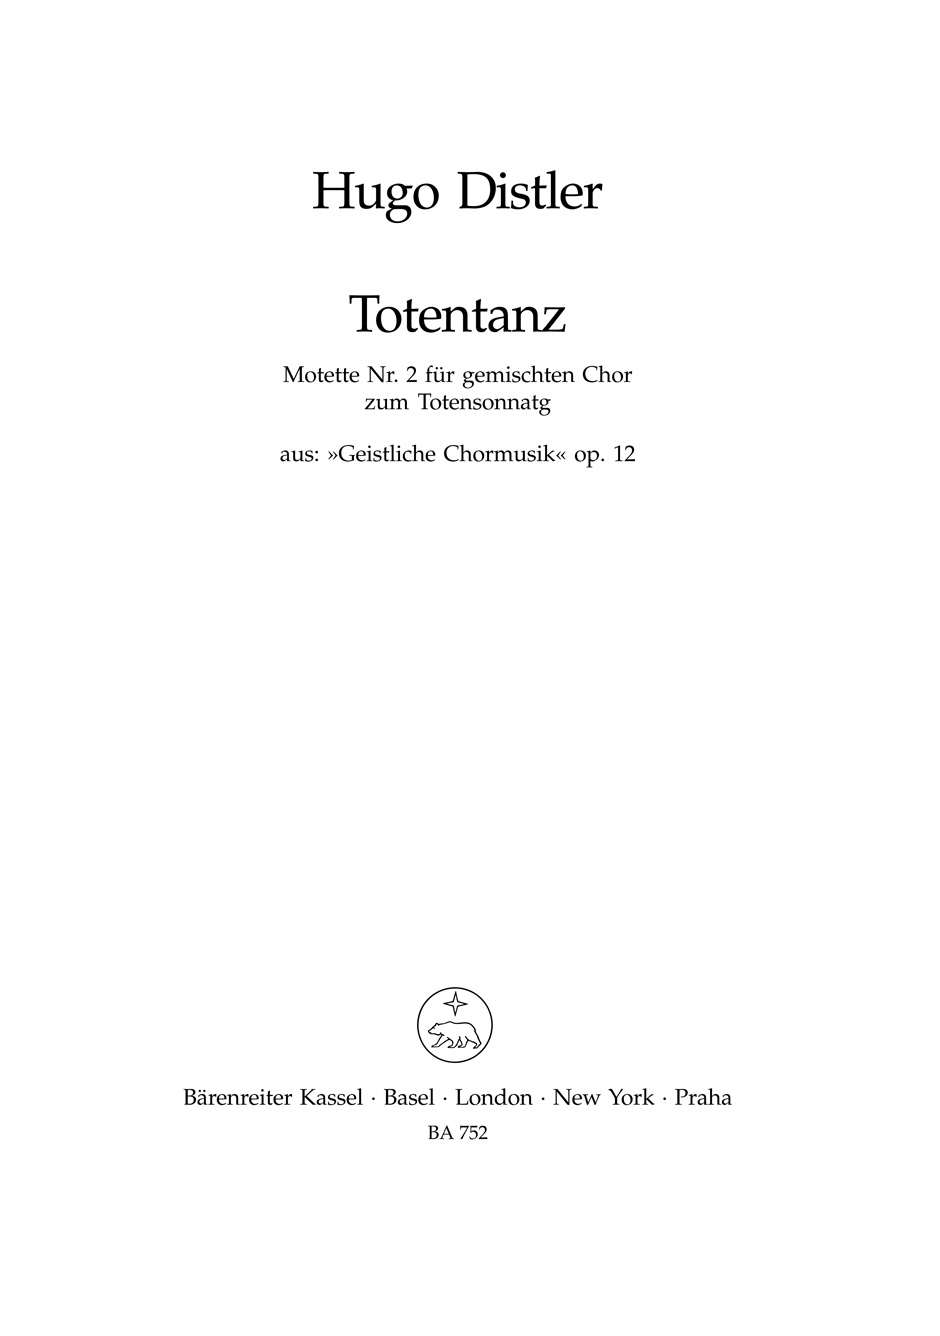 Hugo Distler: Totentanz: Mixed Choir: Vocal Score